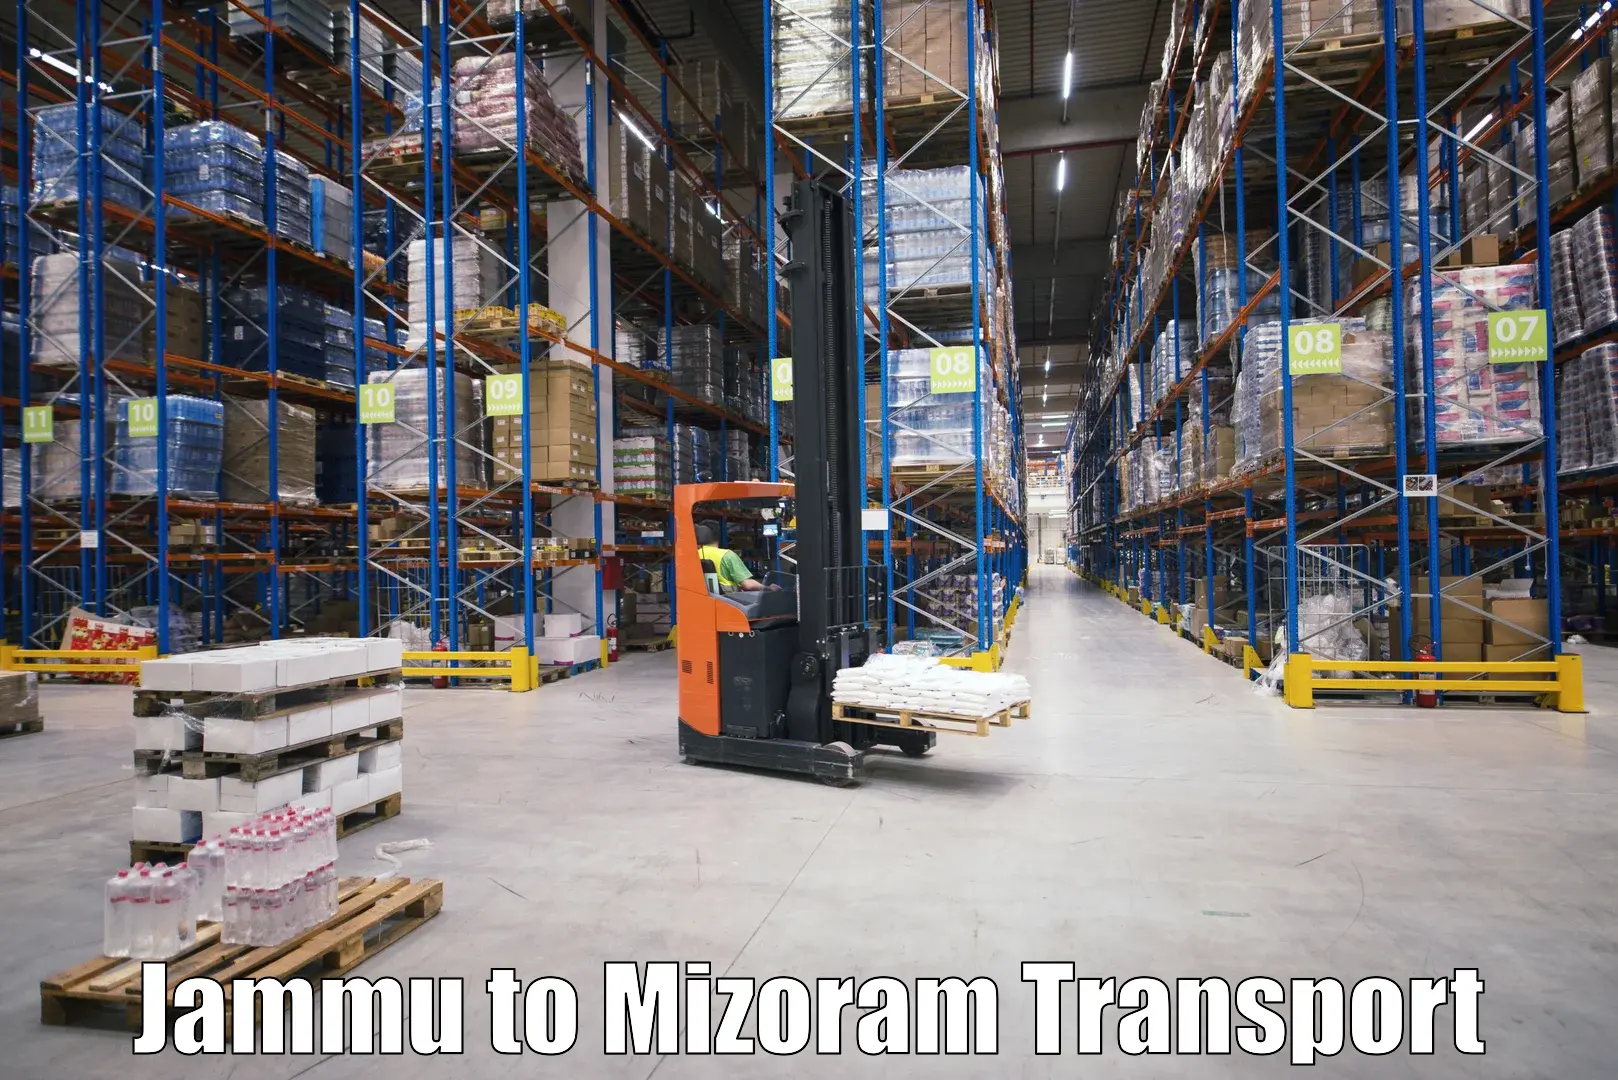 Daily transport service Jammu to Mizoram